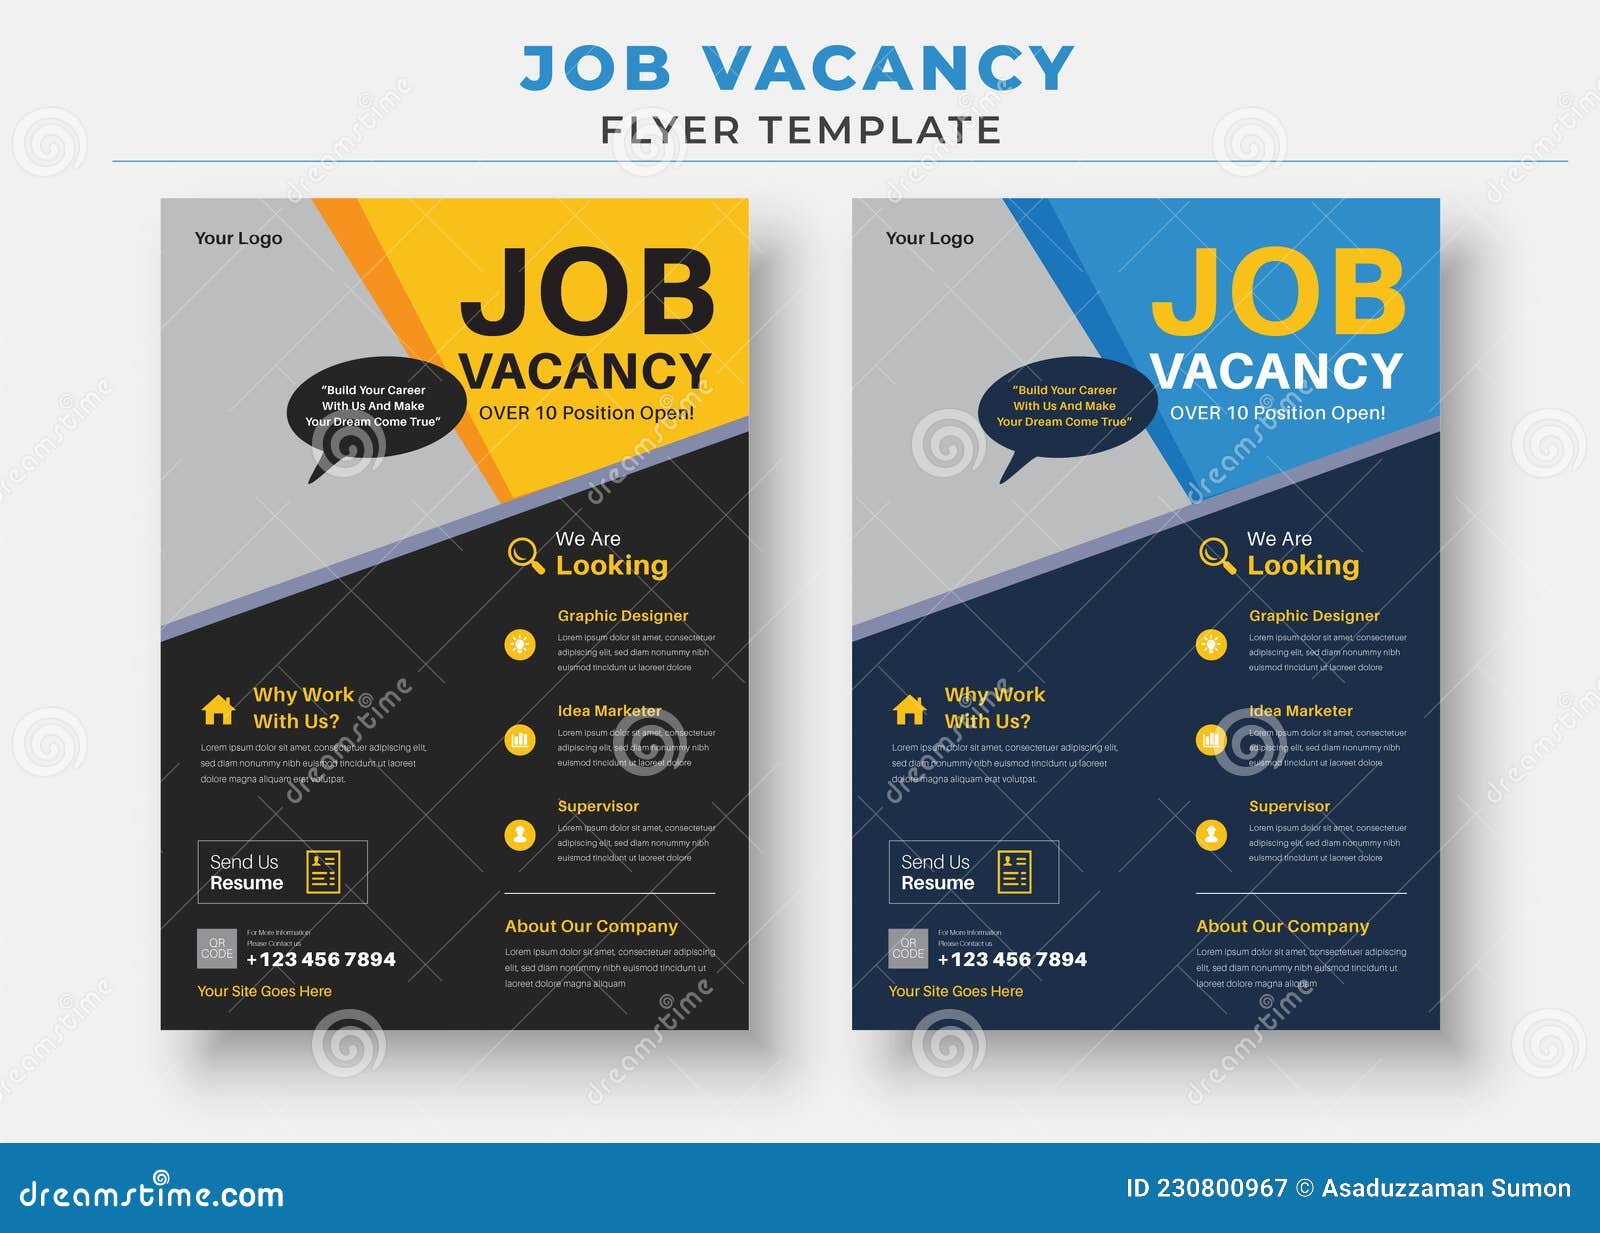 Job Vacancy Flyer Template, we are Hiring Job Flyer Template Stock Pertaining To Career Flyer Template